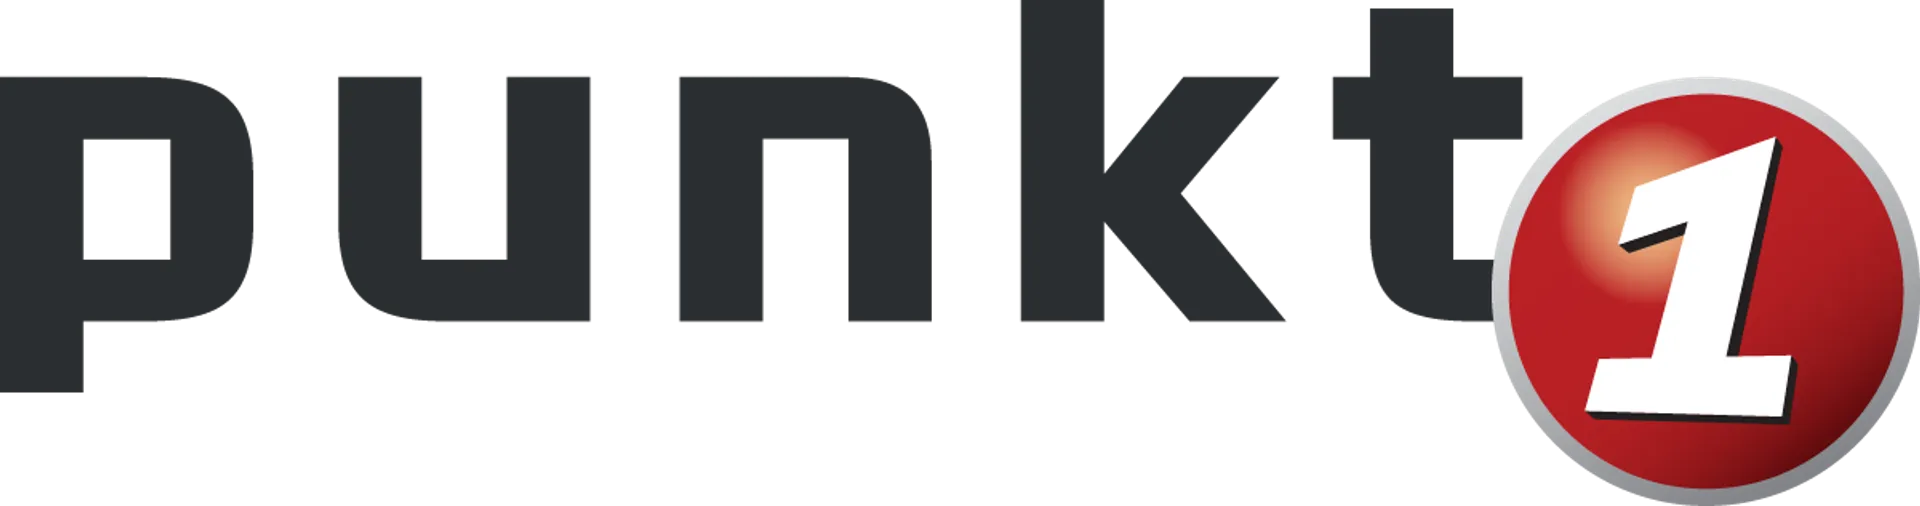 PUNKT1 logo